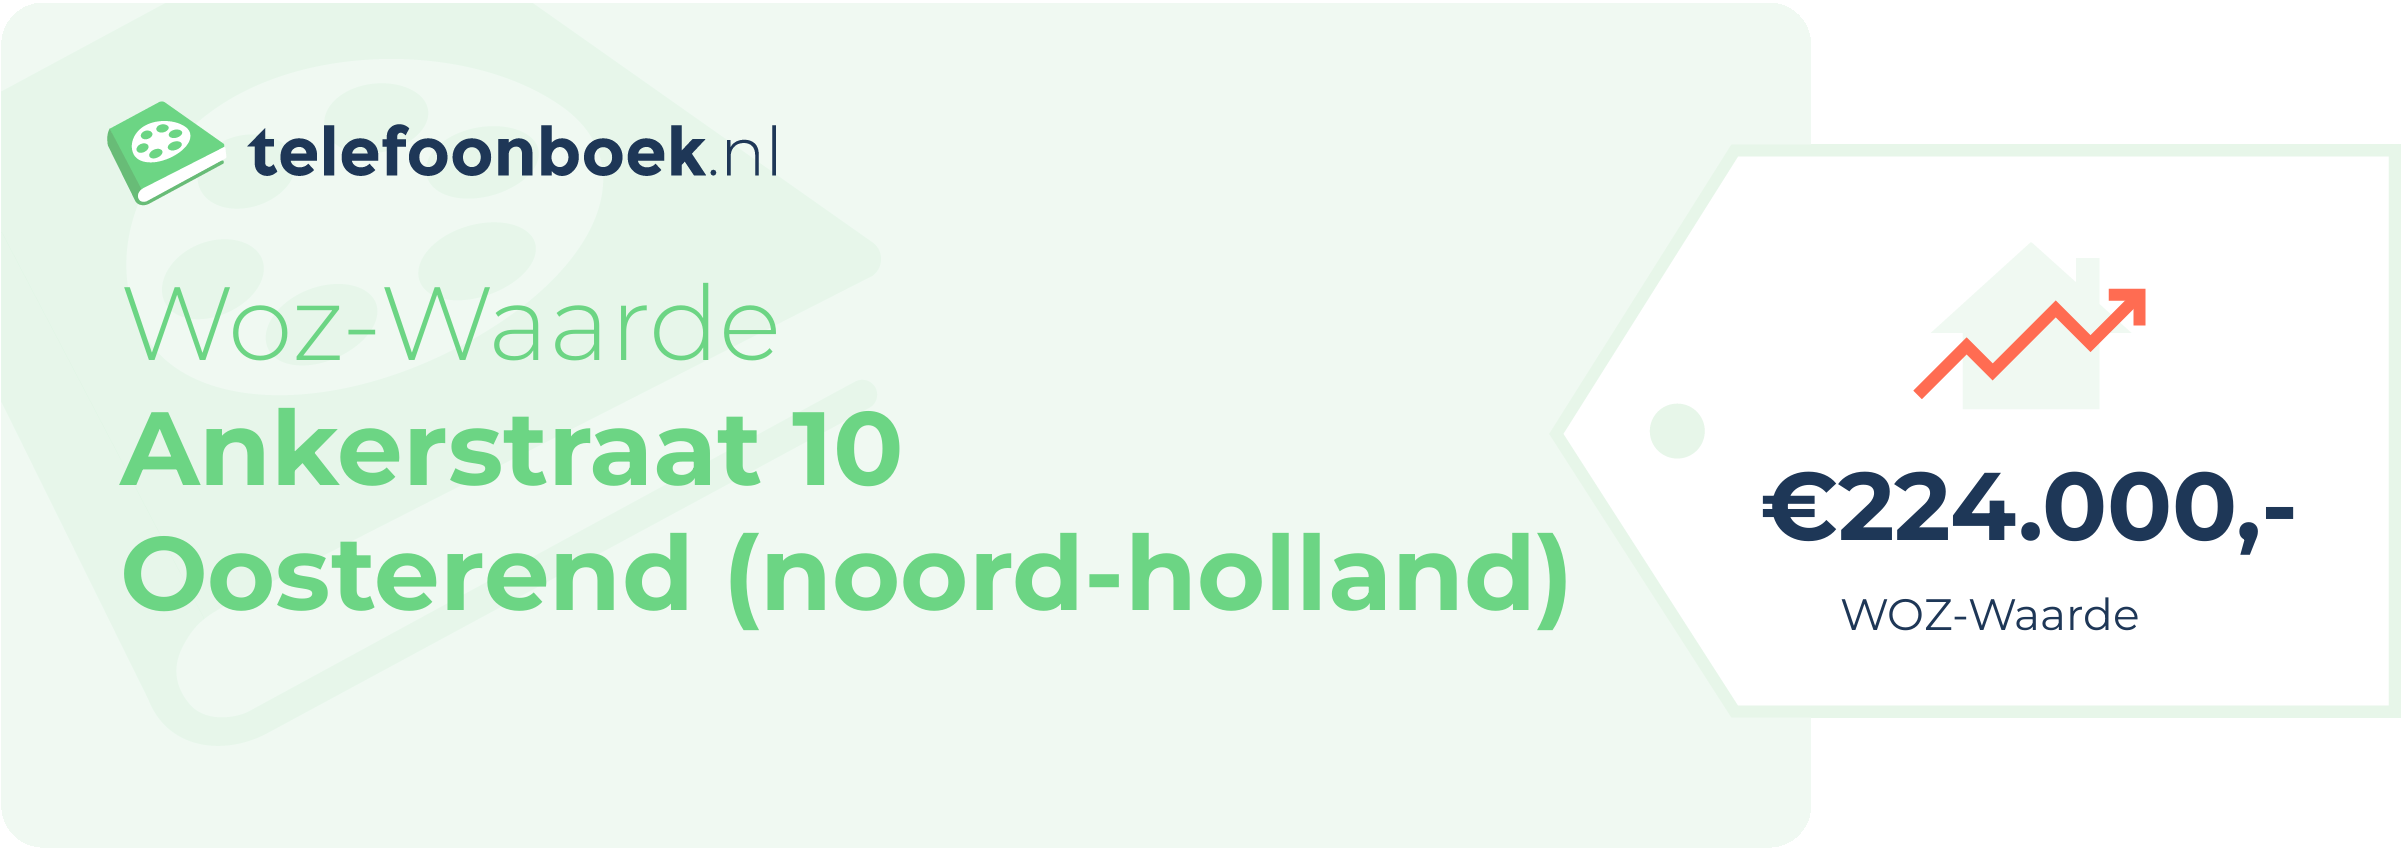 WOZ-waarde Ankerstraat 10 Oosterend (Noord-Holland)